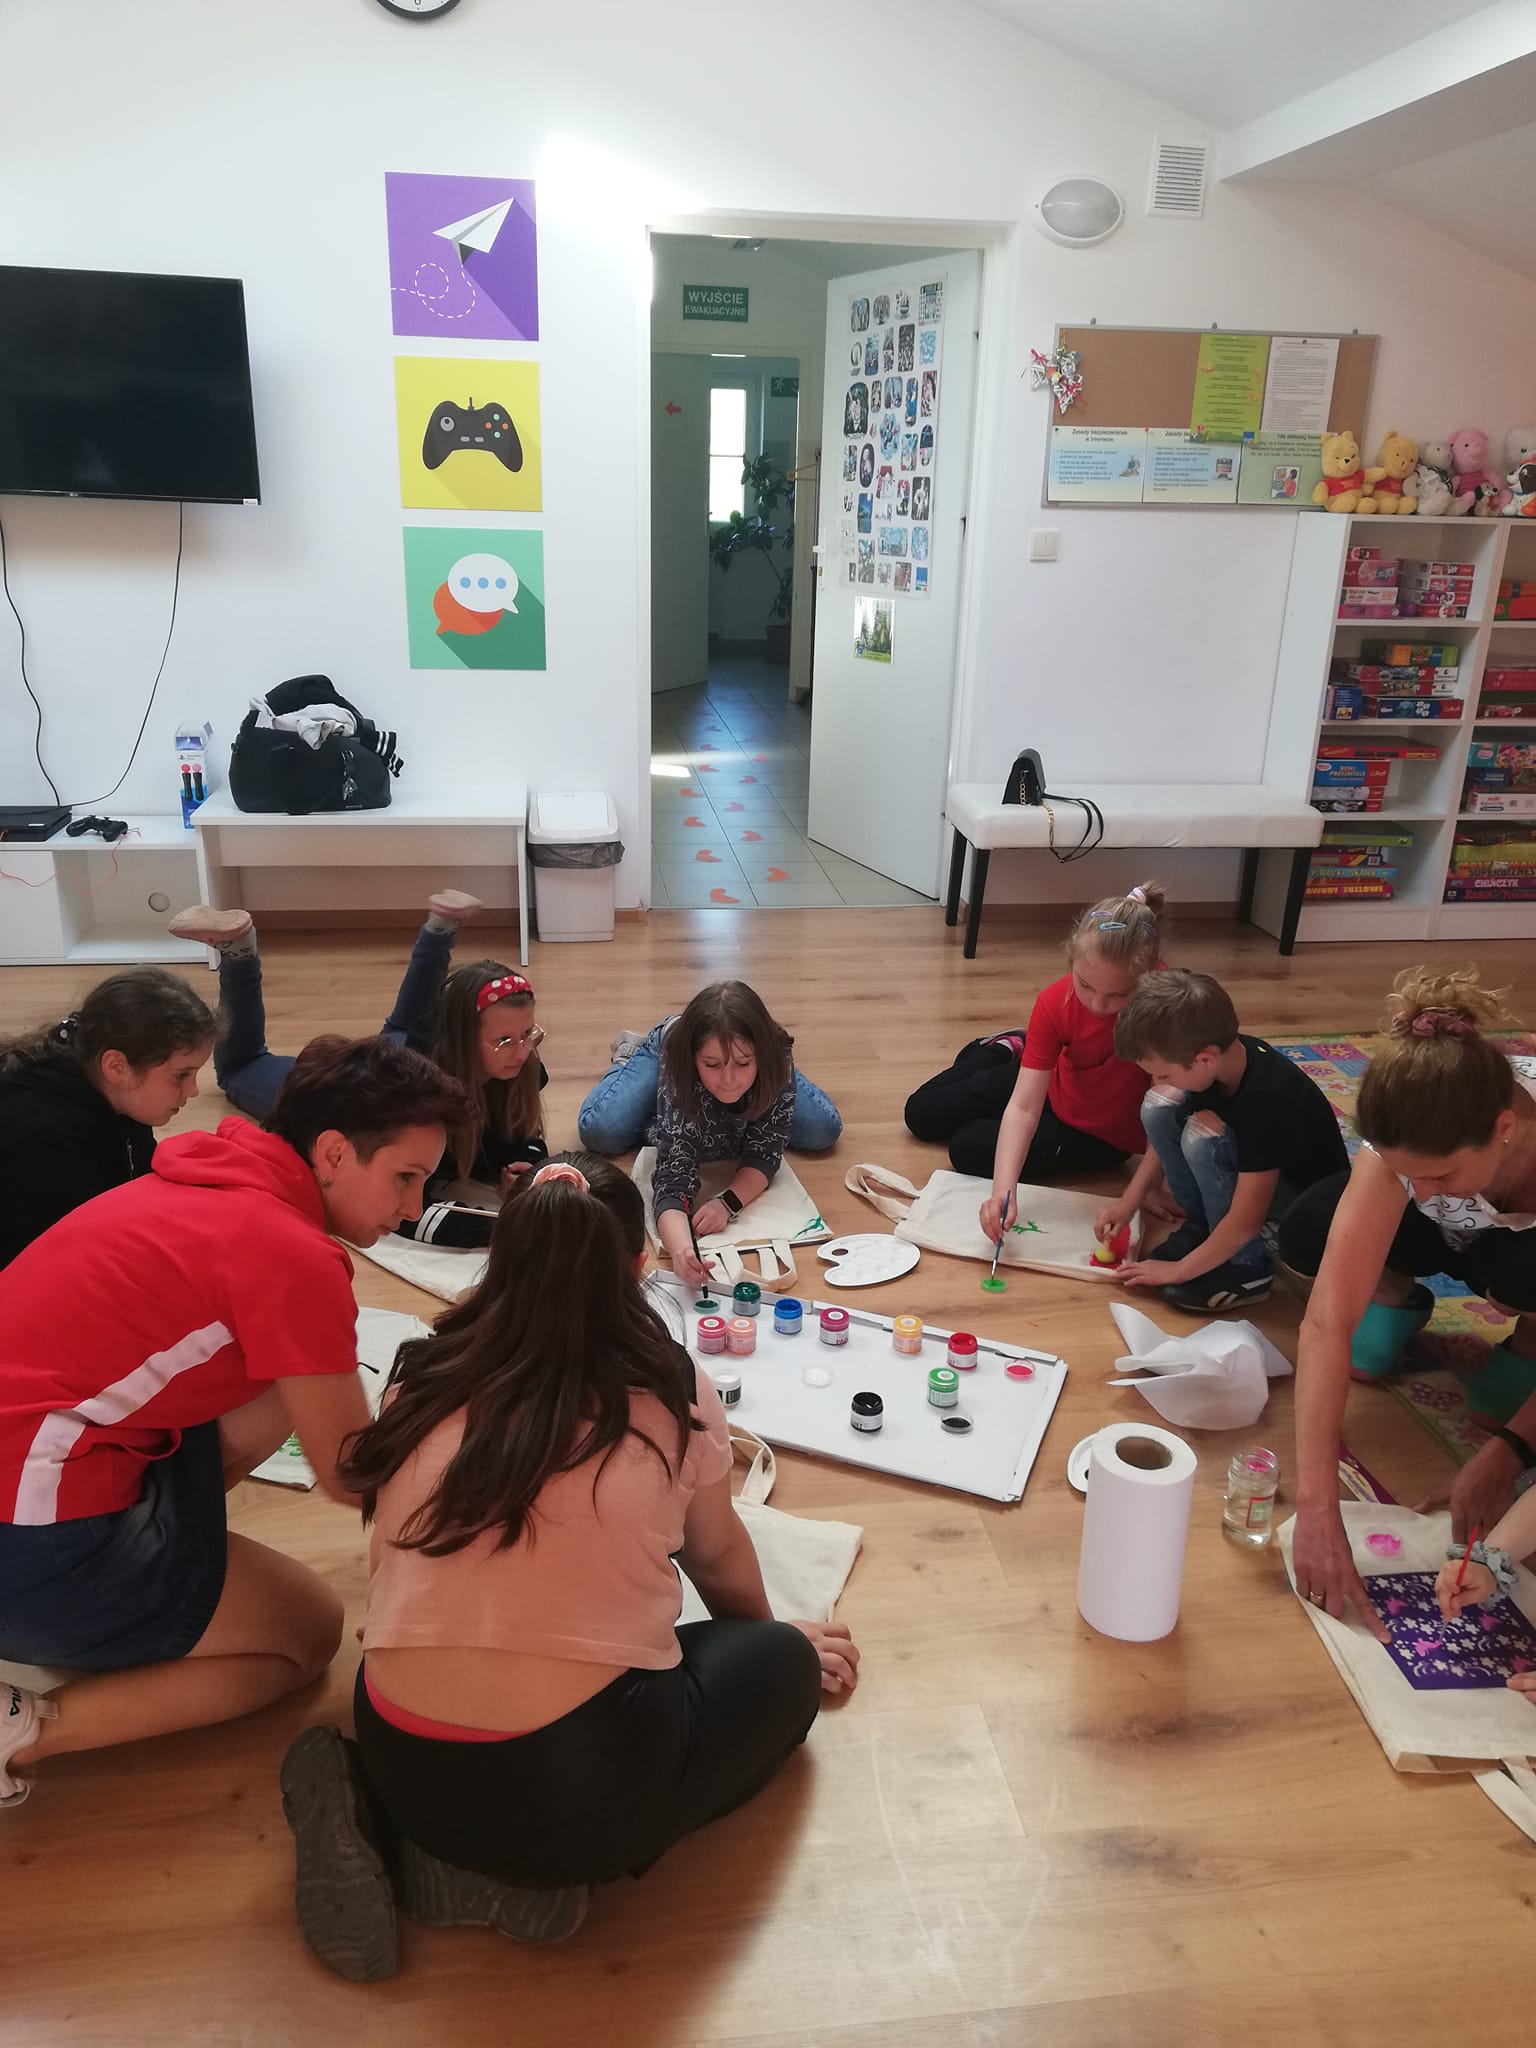 Grupa dzieci i młodzieży siedzących na podłodze, malują farbami na torbach bawełnianych.